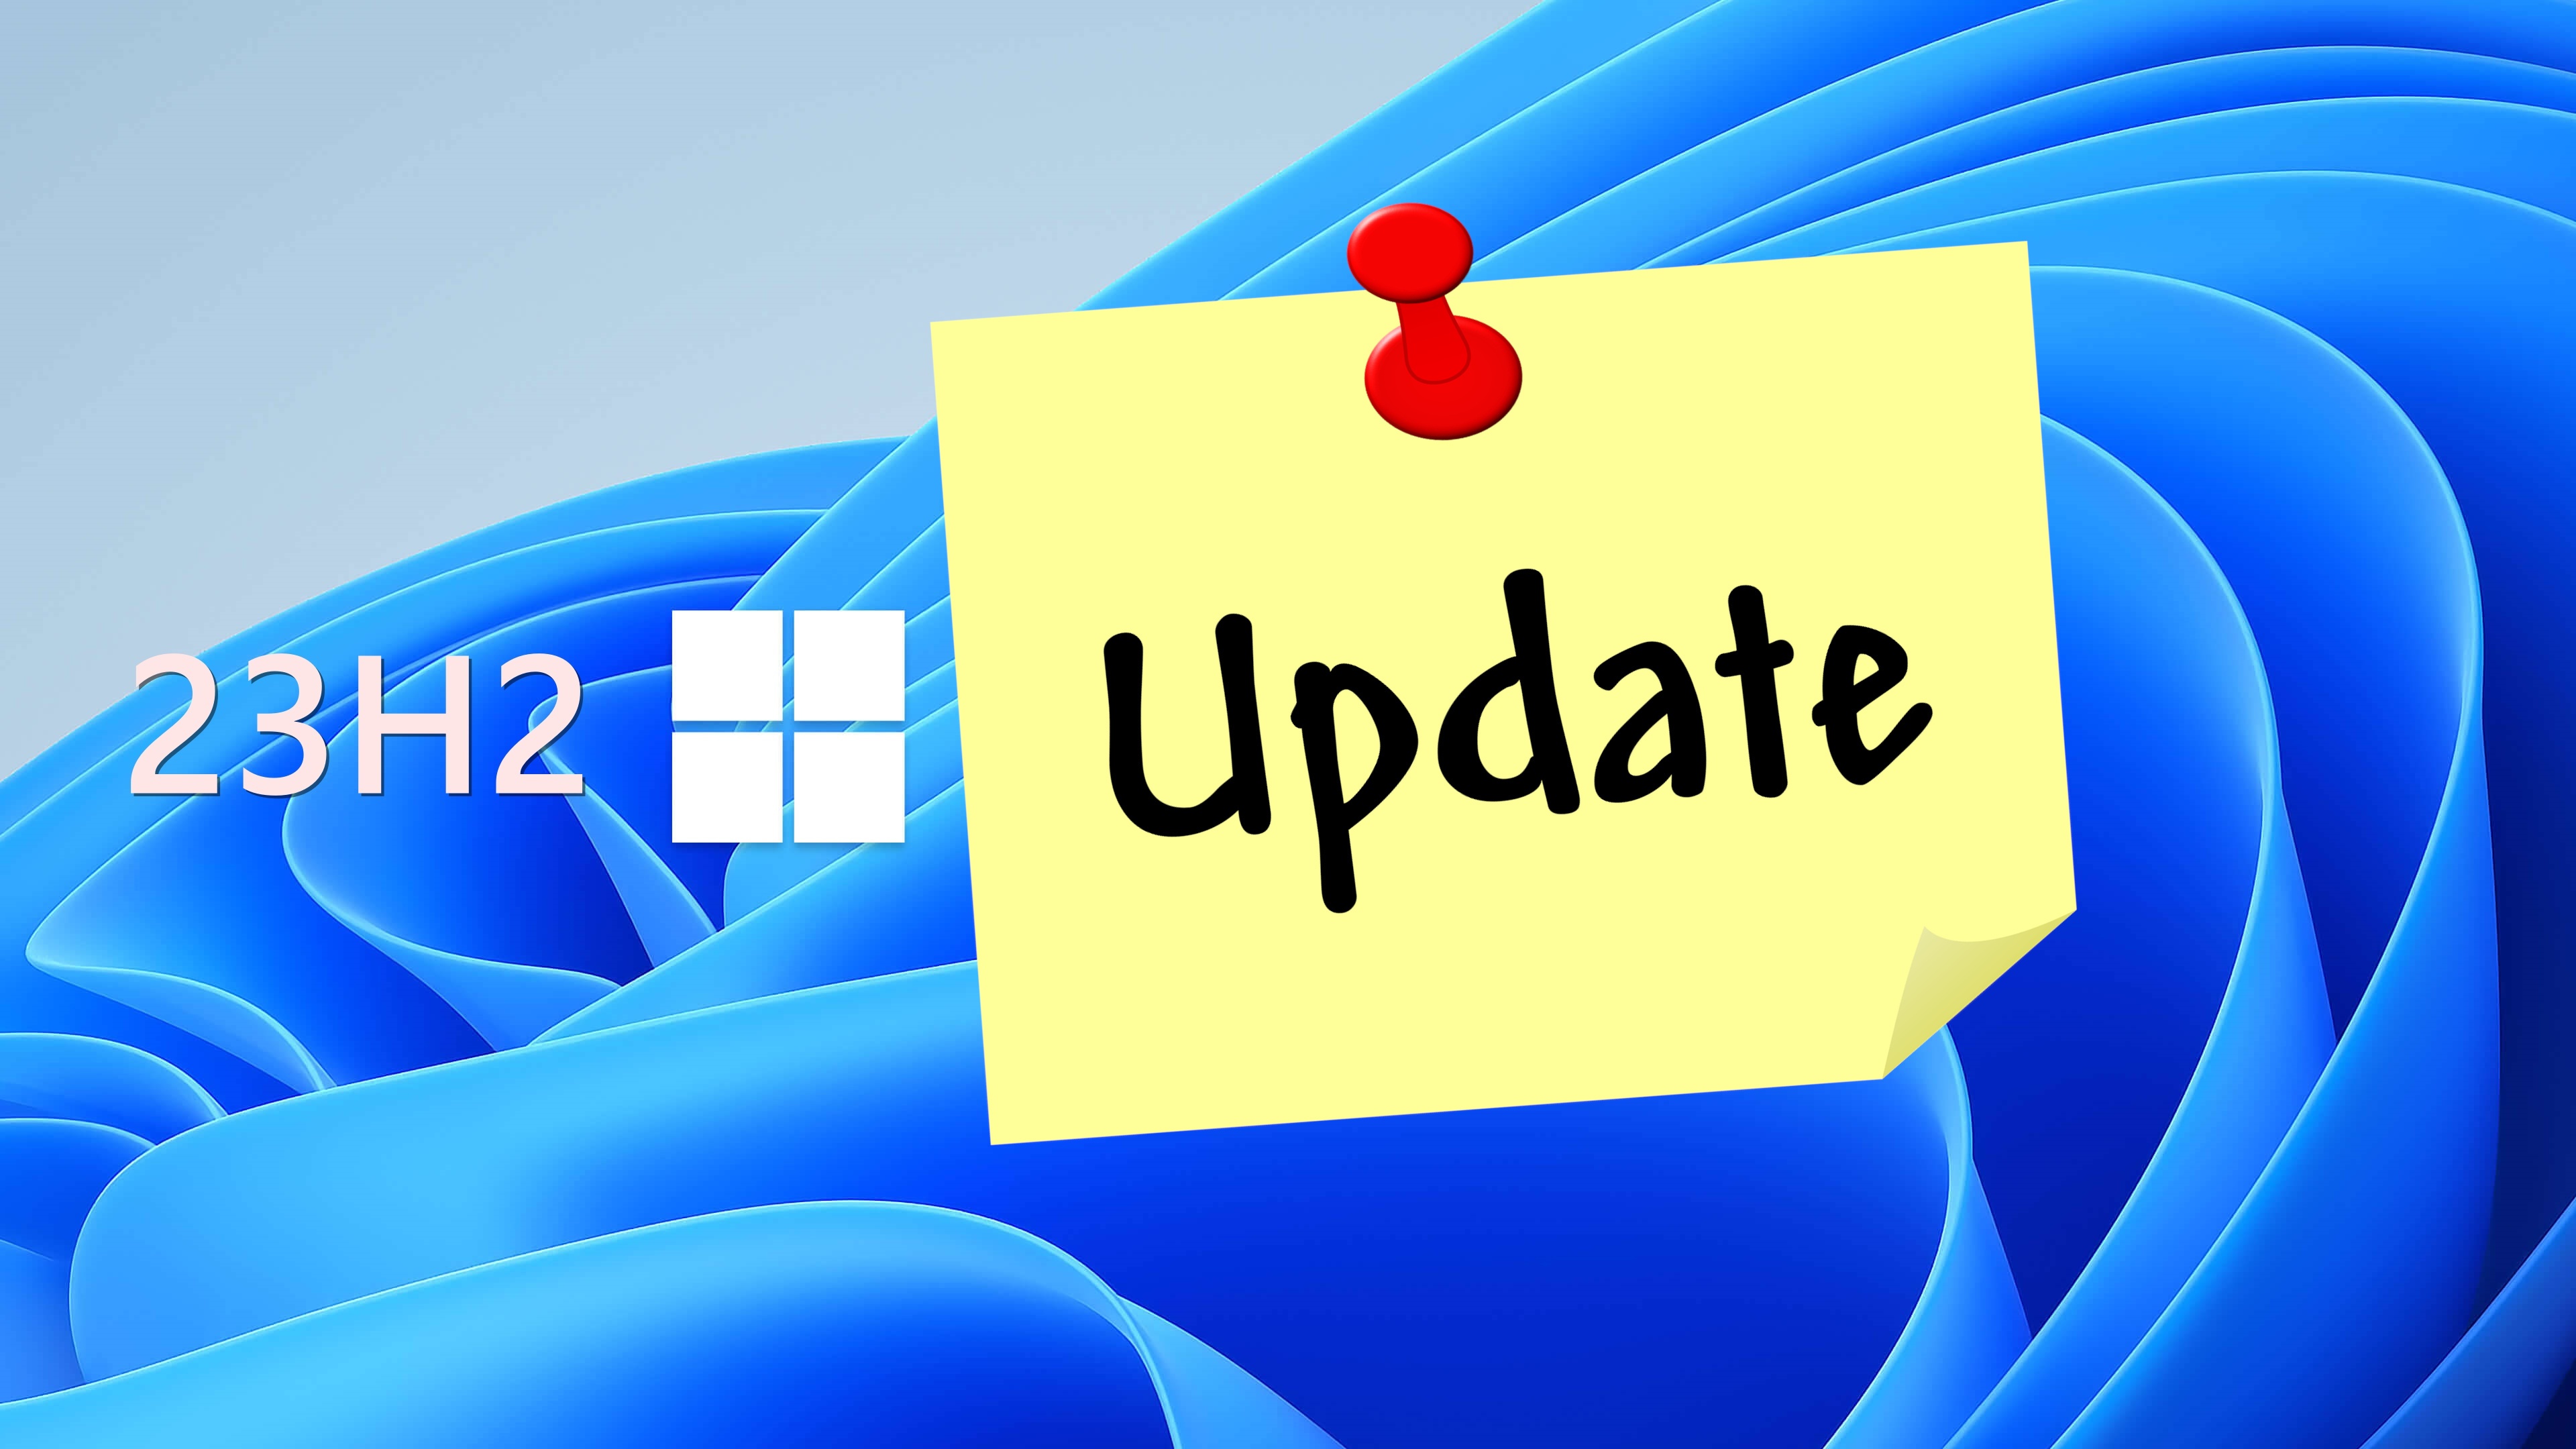 #Windows 11 23H2: Diese neuen Features erwarten uns im nächsten großen Update